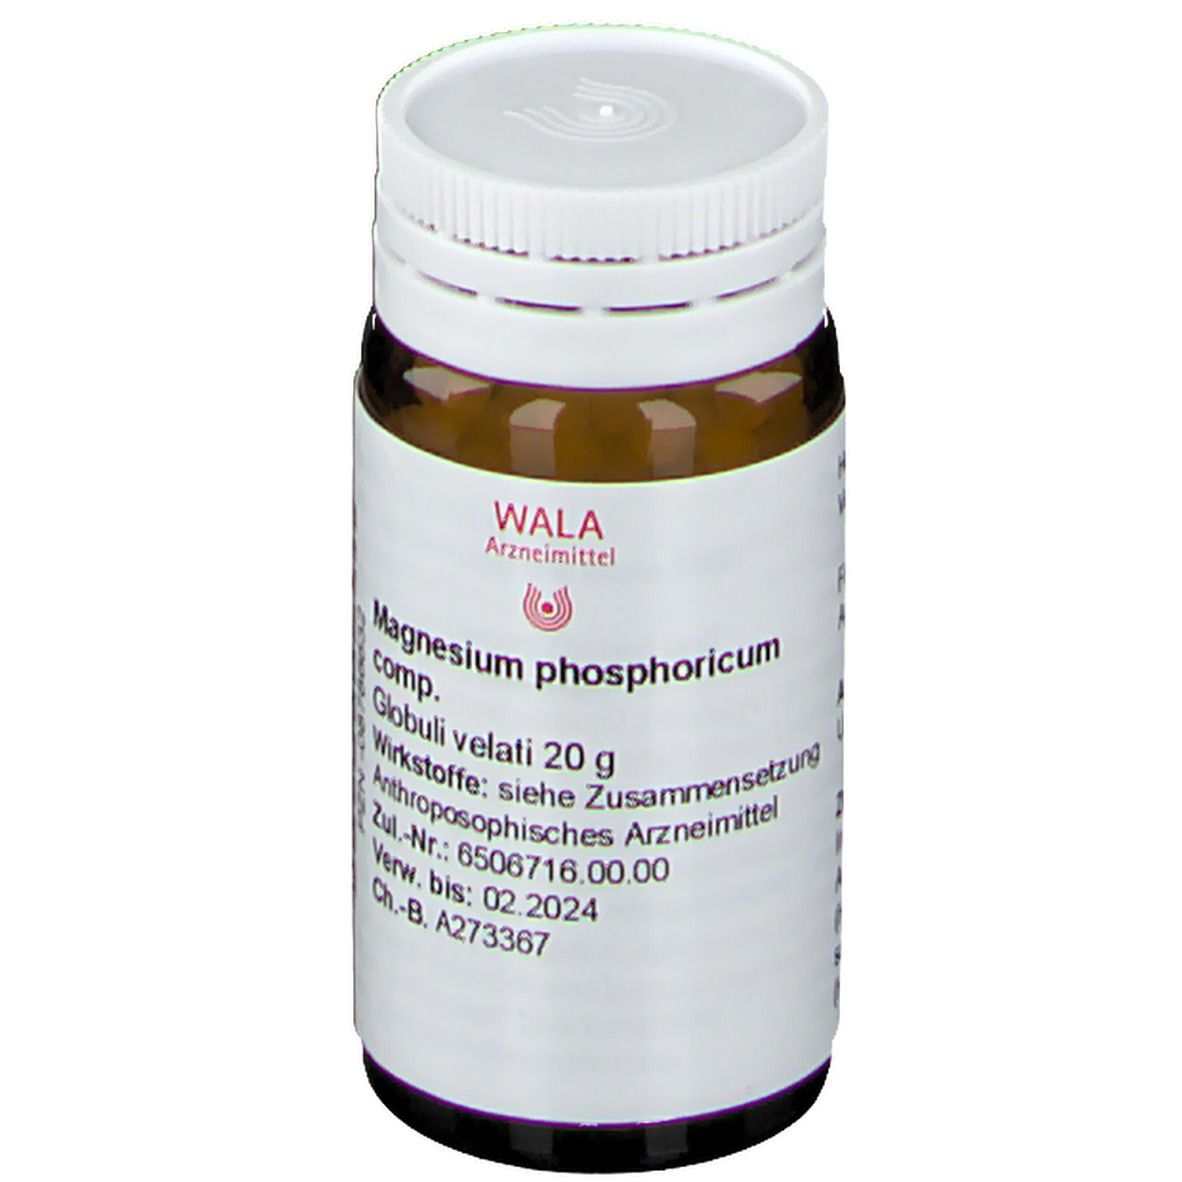 WALA® Magnesium Phos. Comp. Globuli